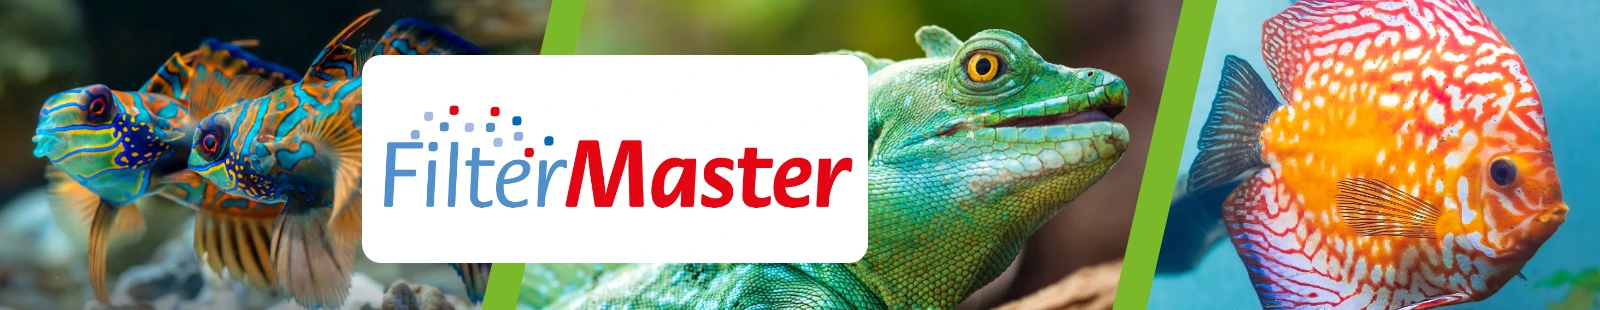 FilterMaster_Banner.webp